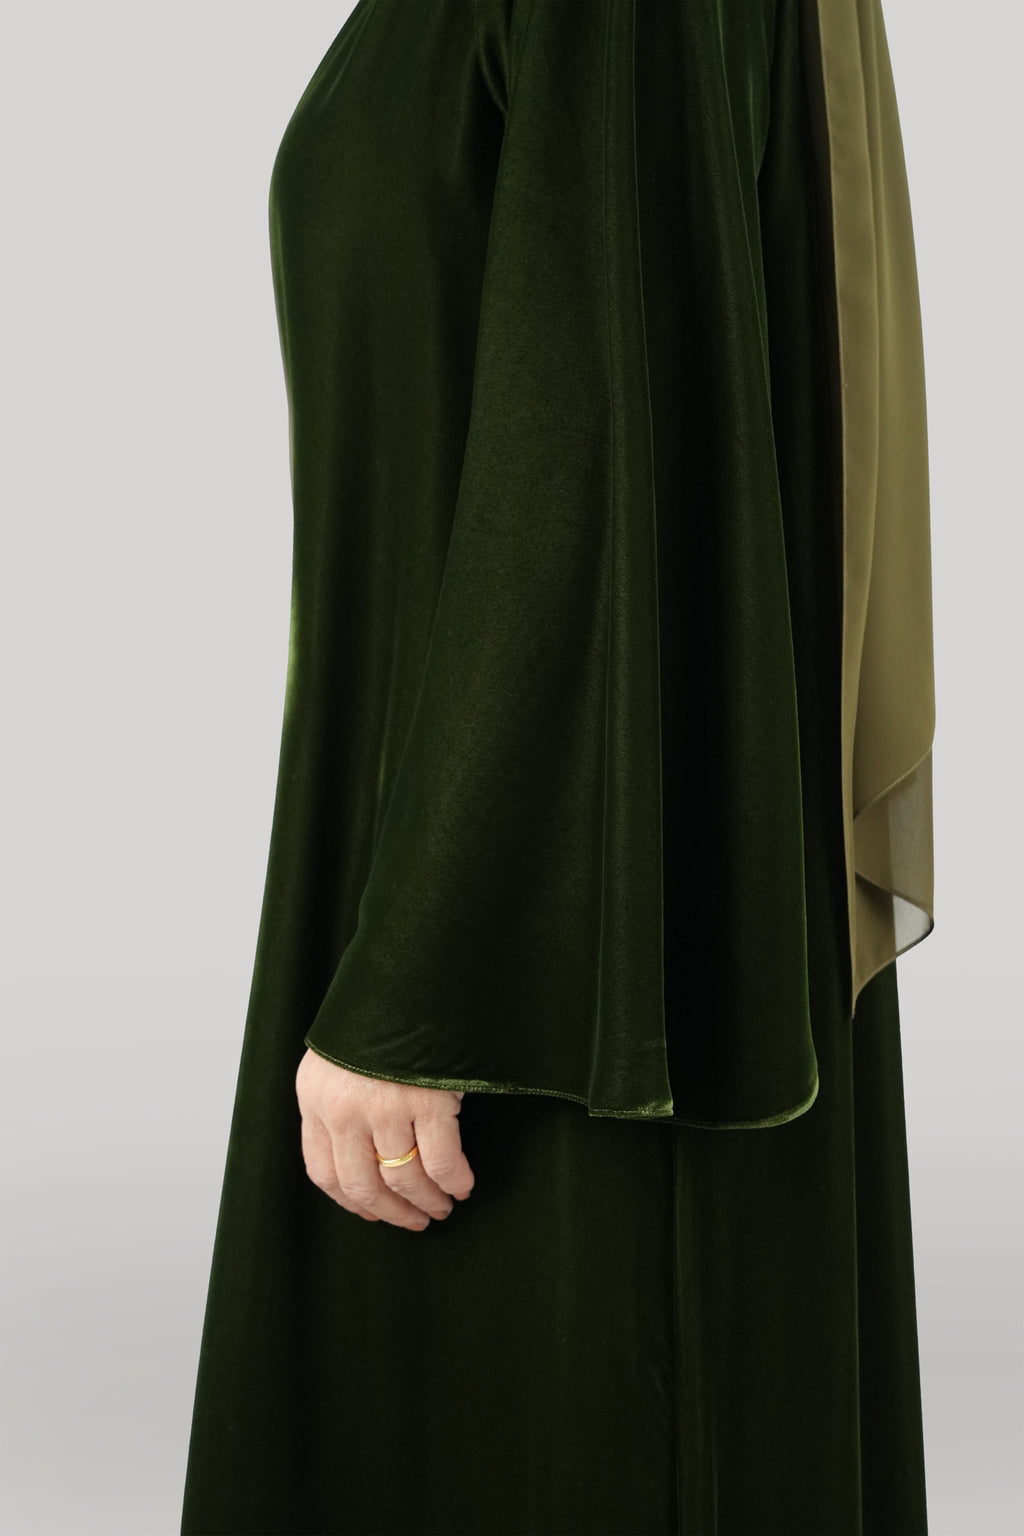 dubai-online-velvet-abaya